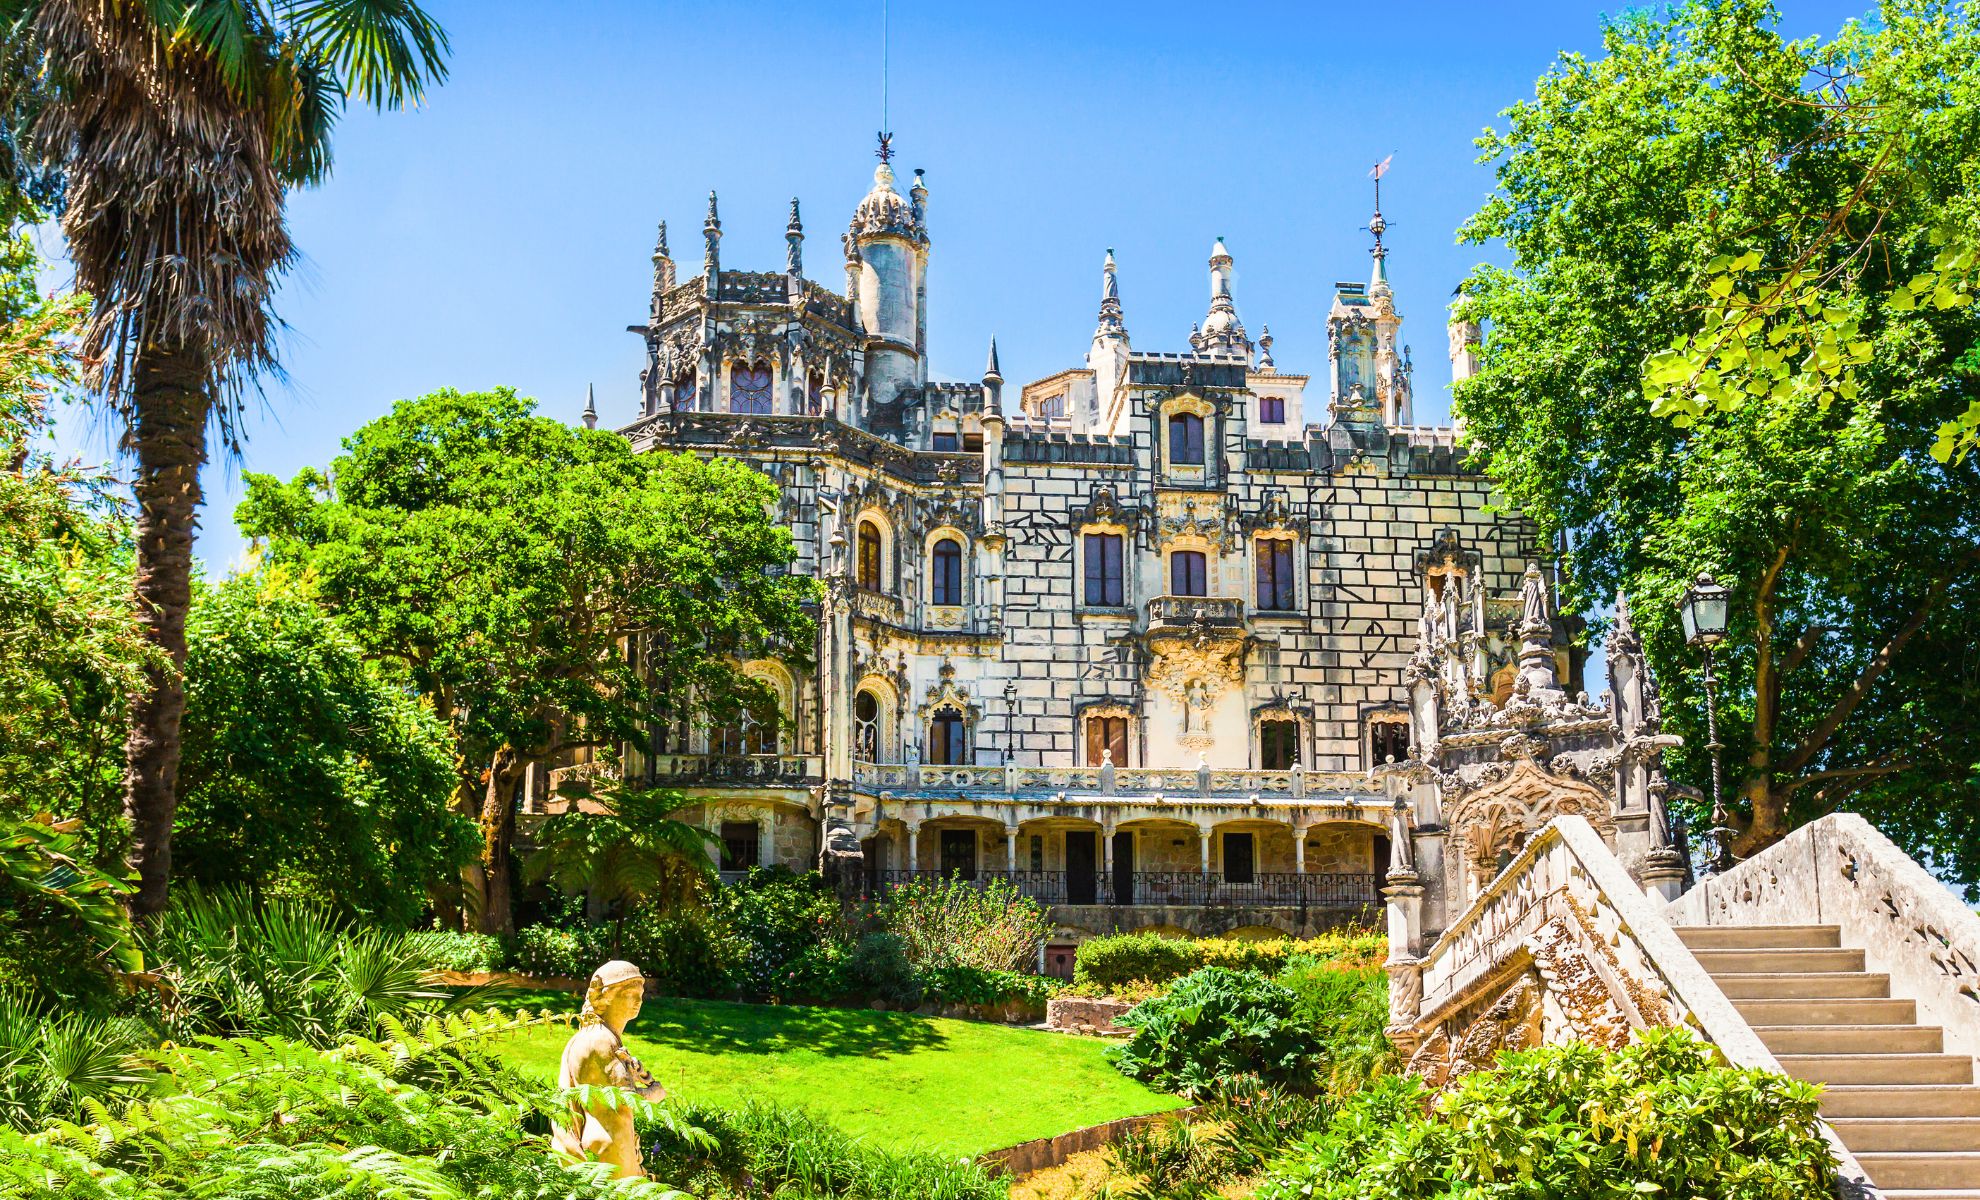 Le palais de la Regaleira, Portugal